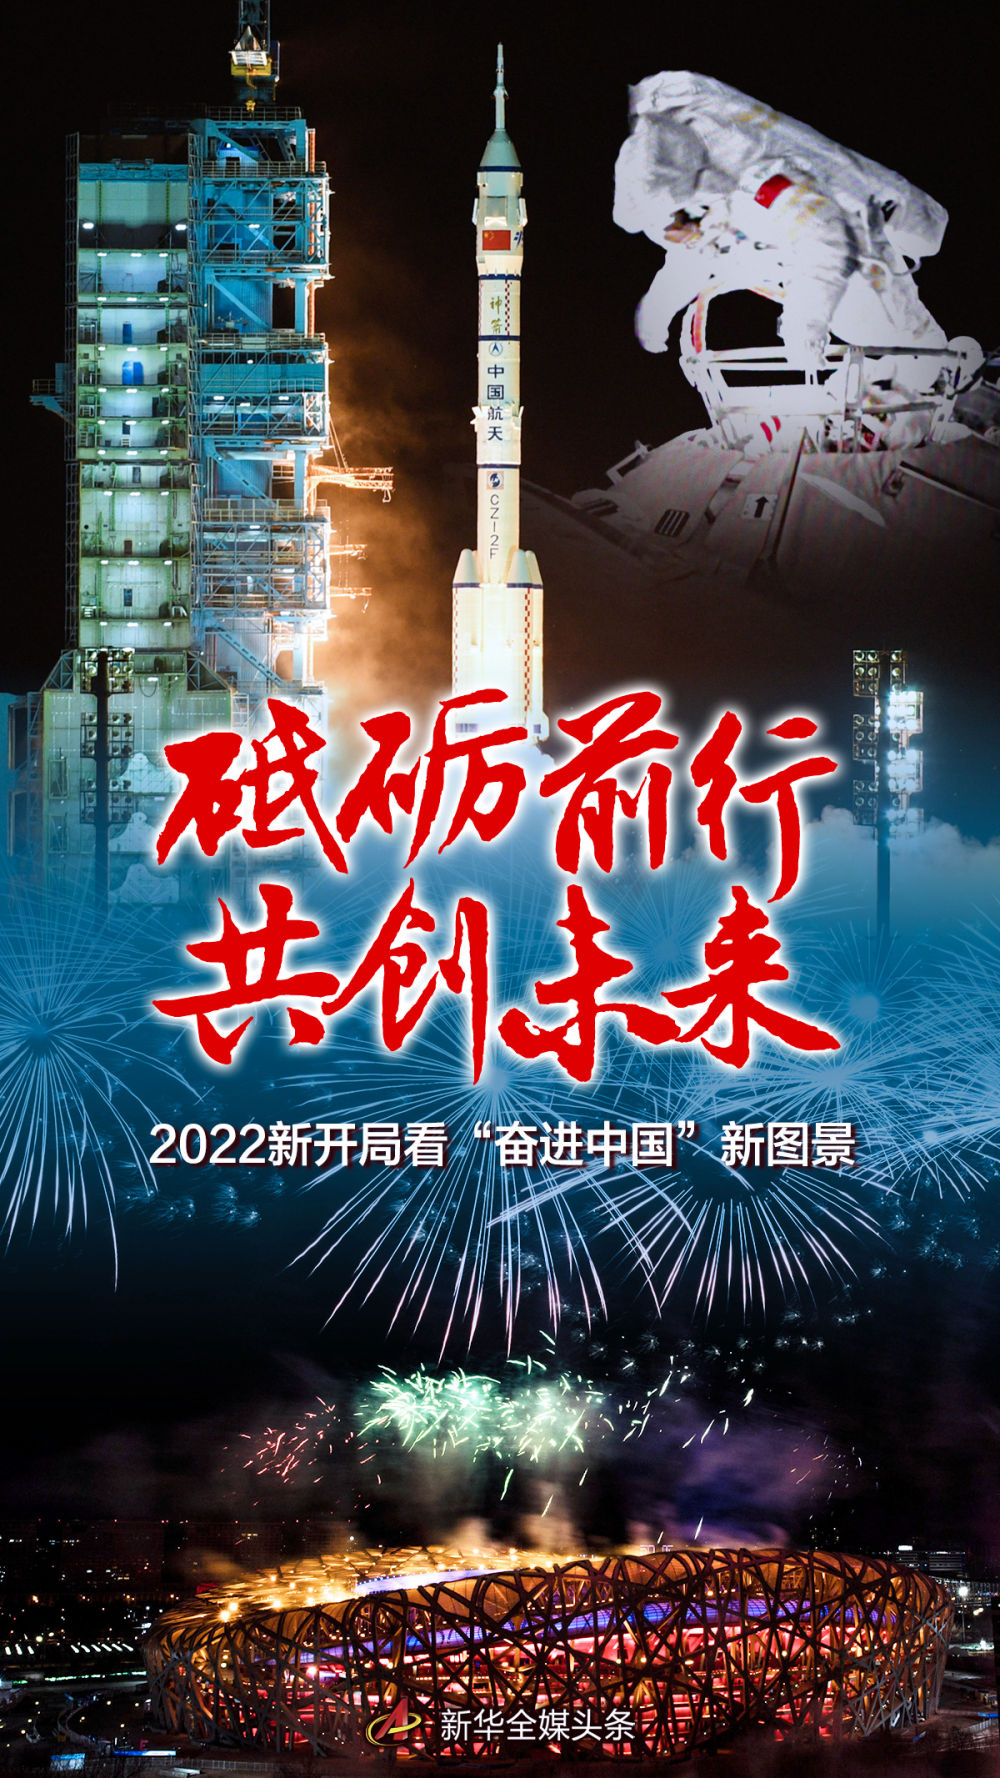 砥砺前行 共创未来——2022新开局看“奋进中国”新图景